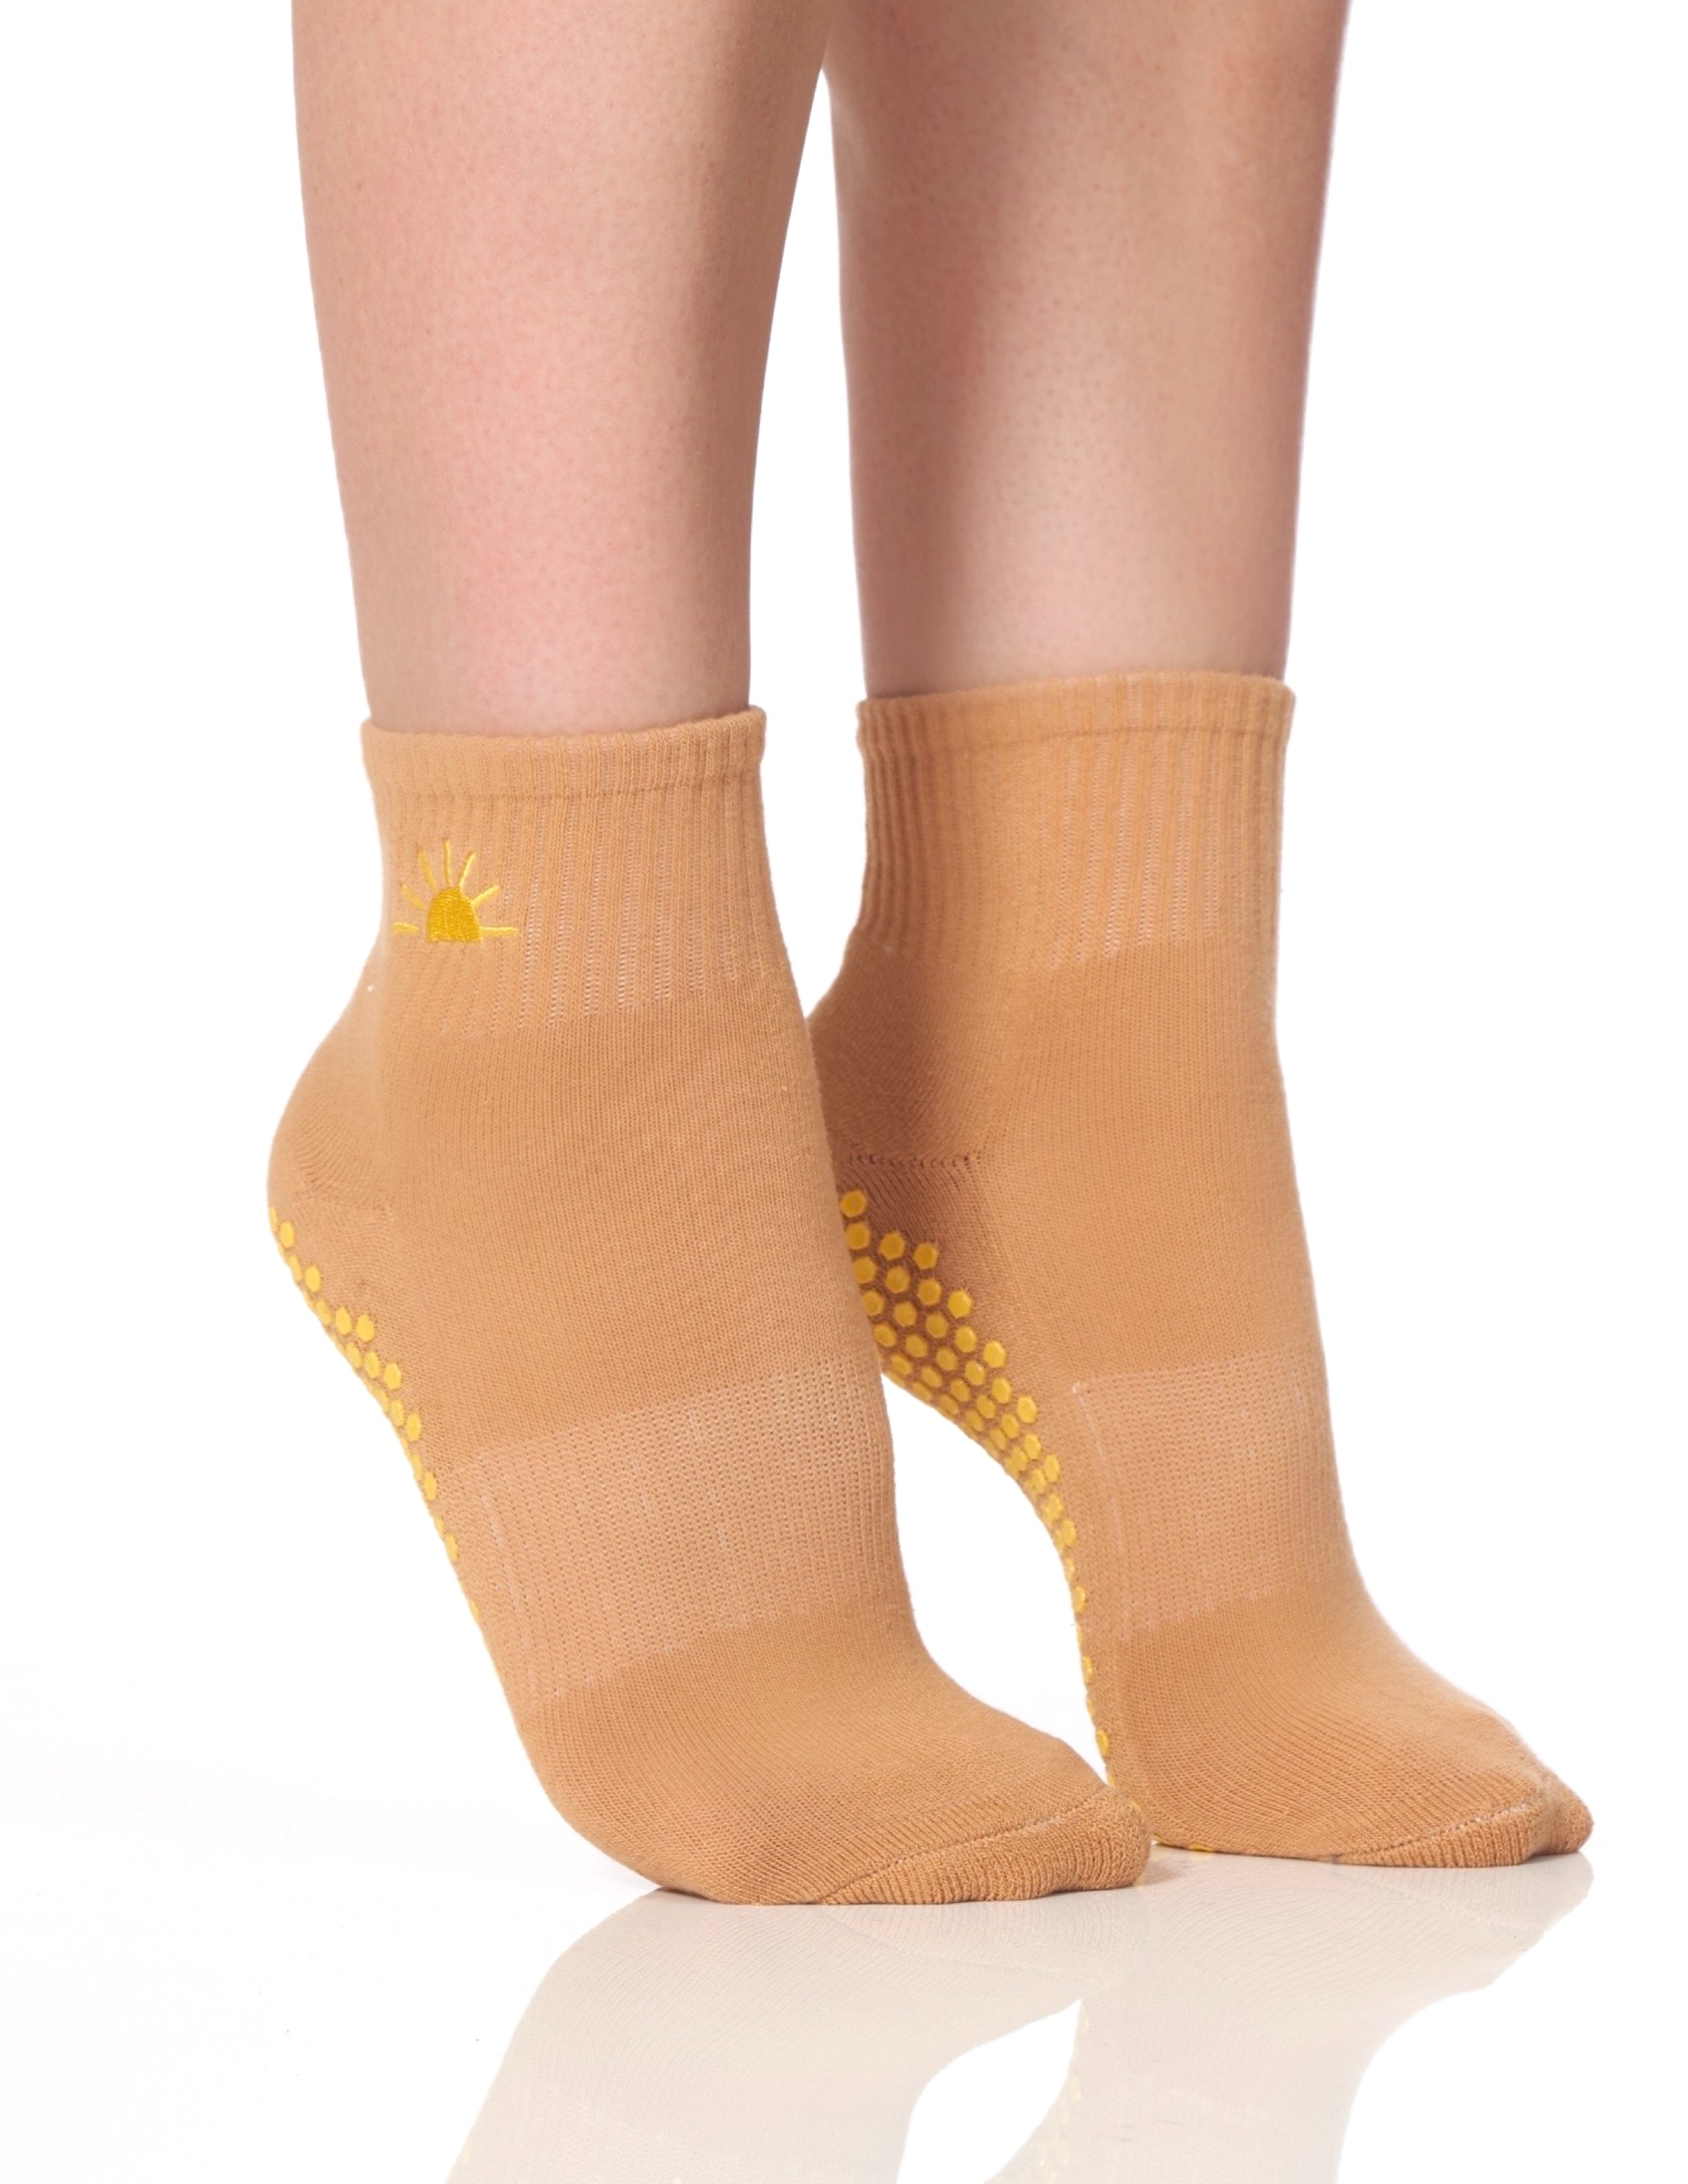 Solidcord is my true love 💙 wearing @Lucky Honey grip socks (swear by